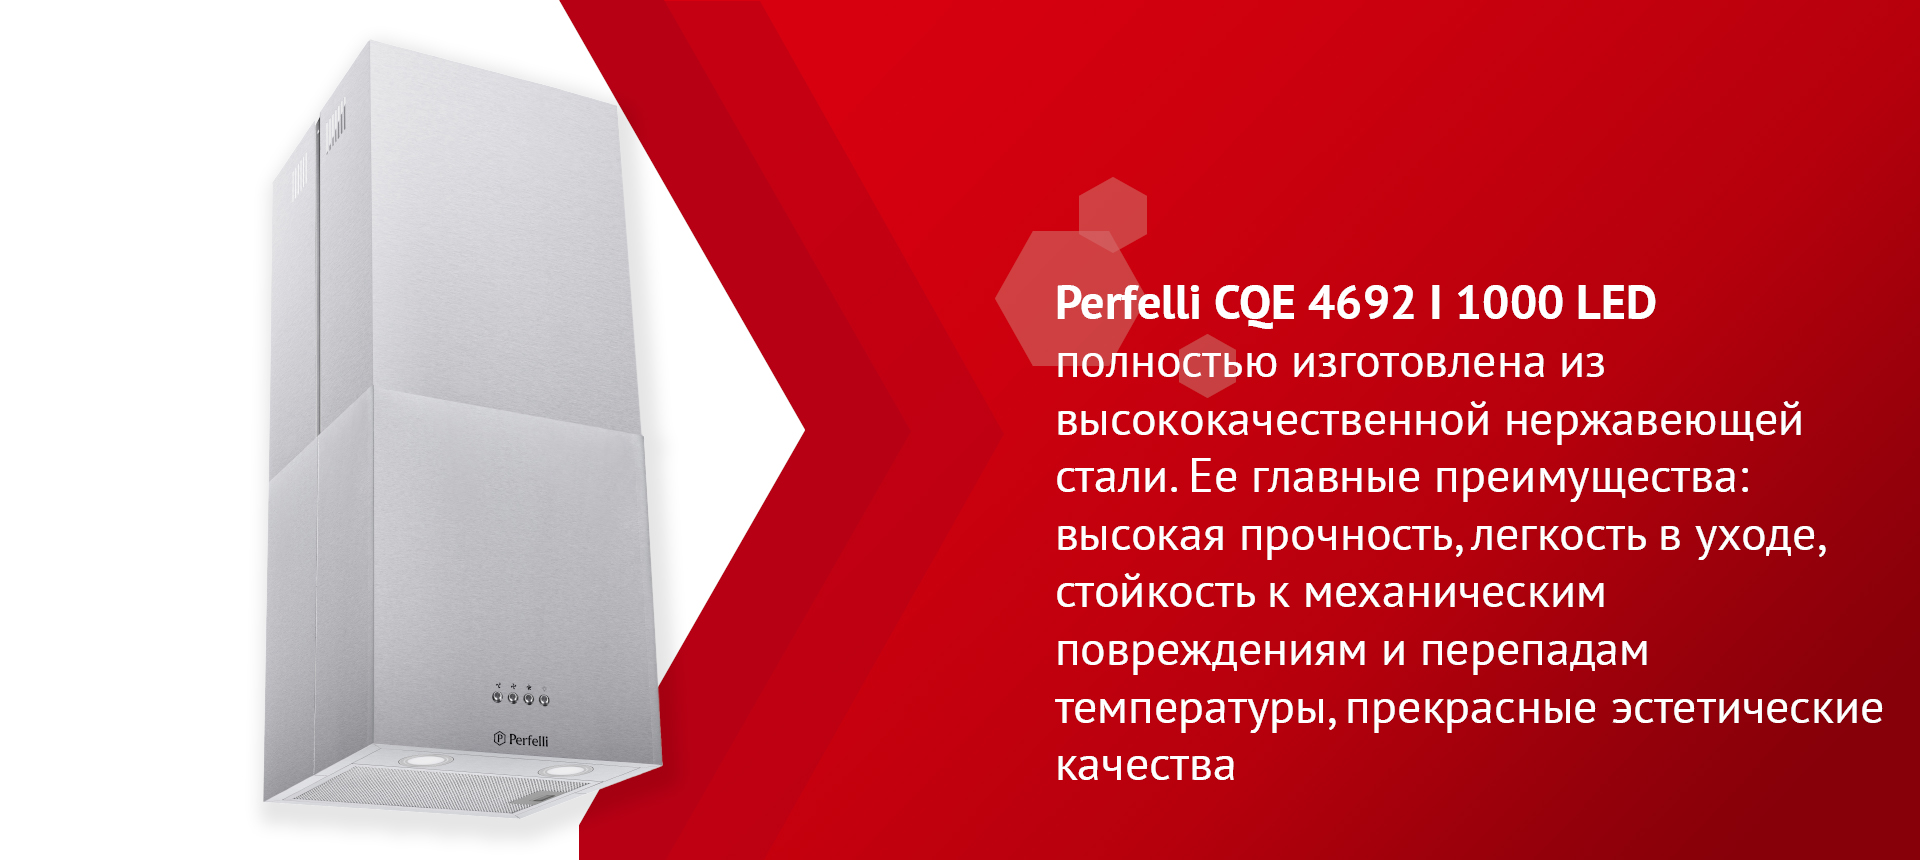 Perfelli CQE 4692 I 1000 LED полностью изготовлена из высококачественной нержавеющей стали. Ее главные преимущества: высокая прочность, легкость в уходе, стойкость к механическим повреждениям и перепадам температуры, прекрасные эстетические качества